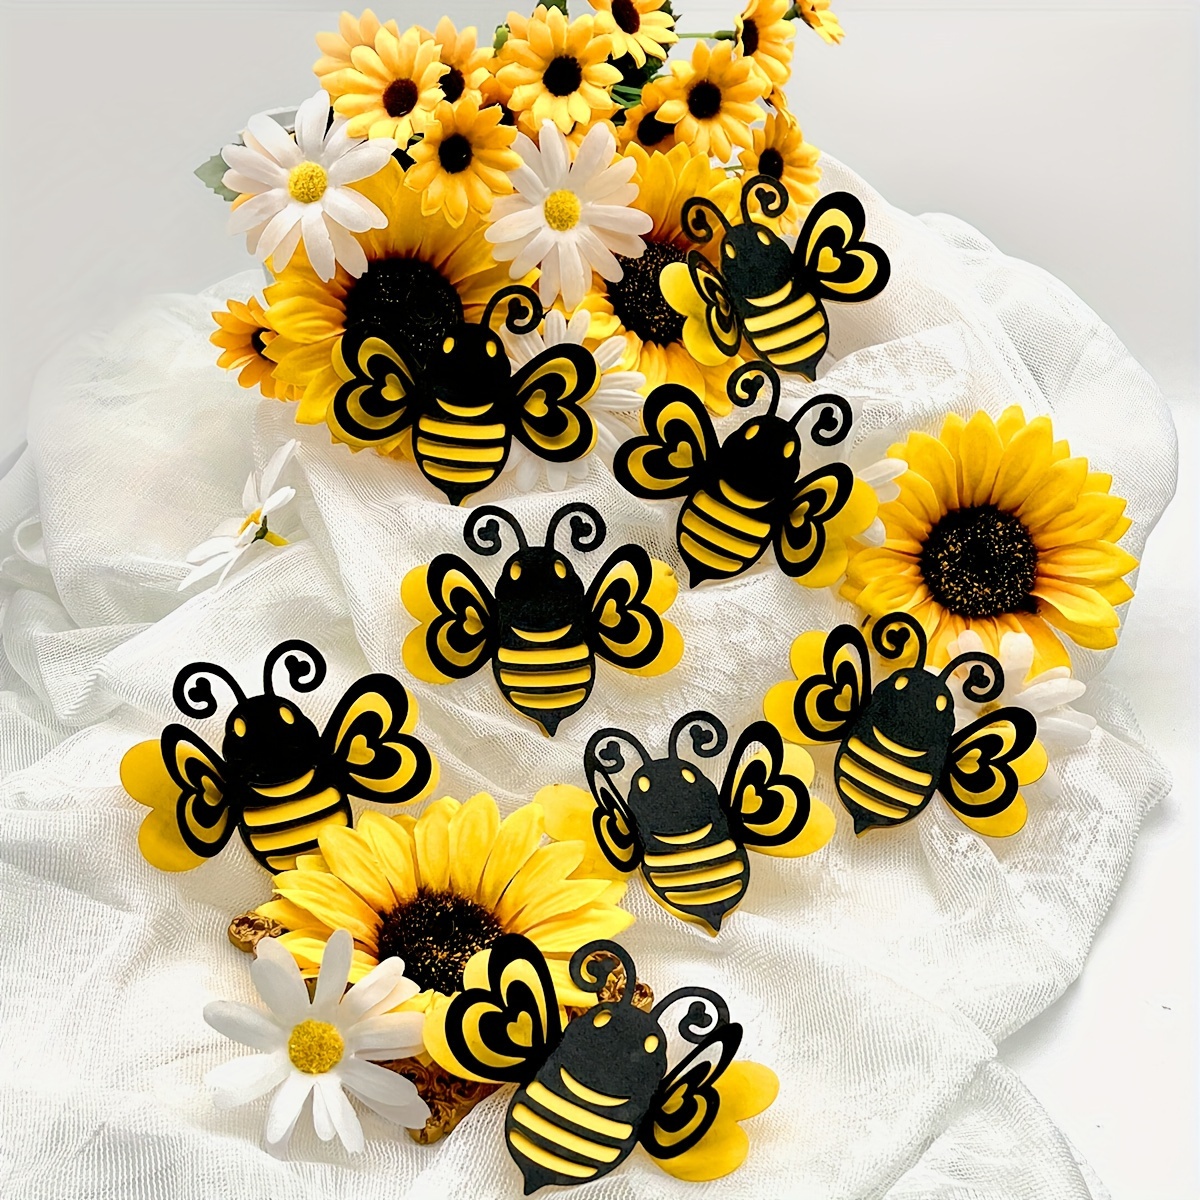  jojofuny 2 piezas de decoración de pared interior Bumble S Abeja  arte en forma de abeja para el hogar, balcón, patio, decoración de  dormitorio, abejas decorativas de metal para jardín